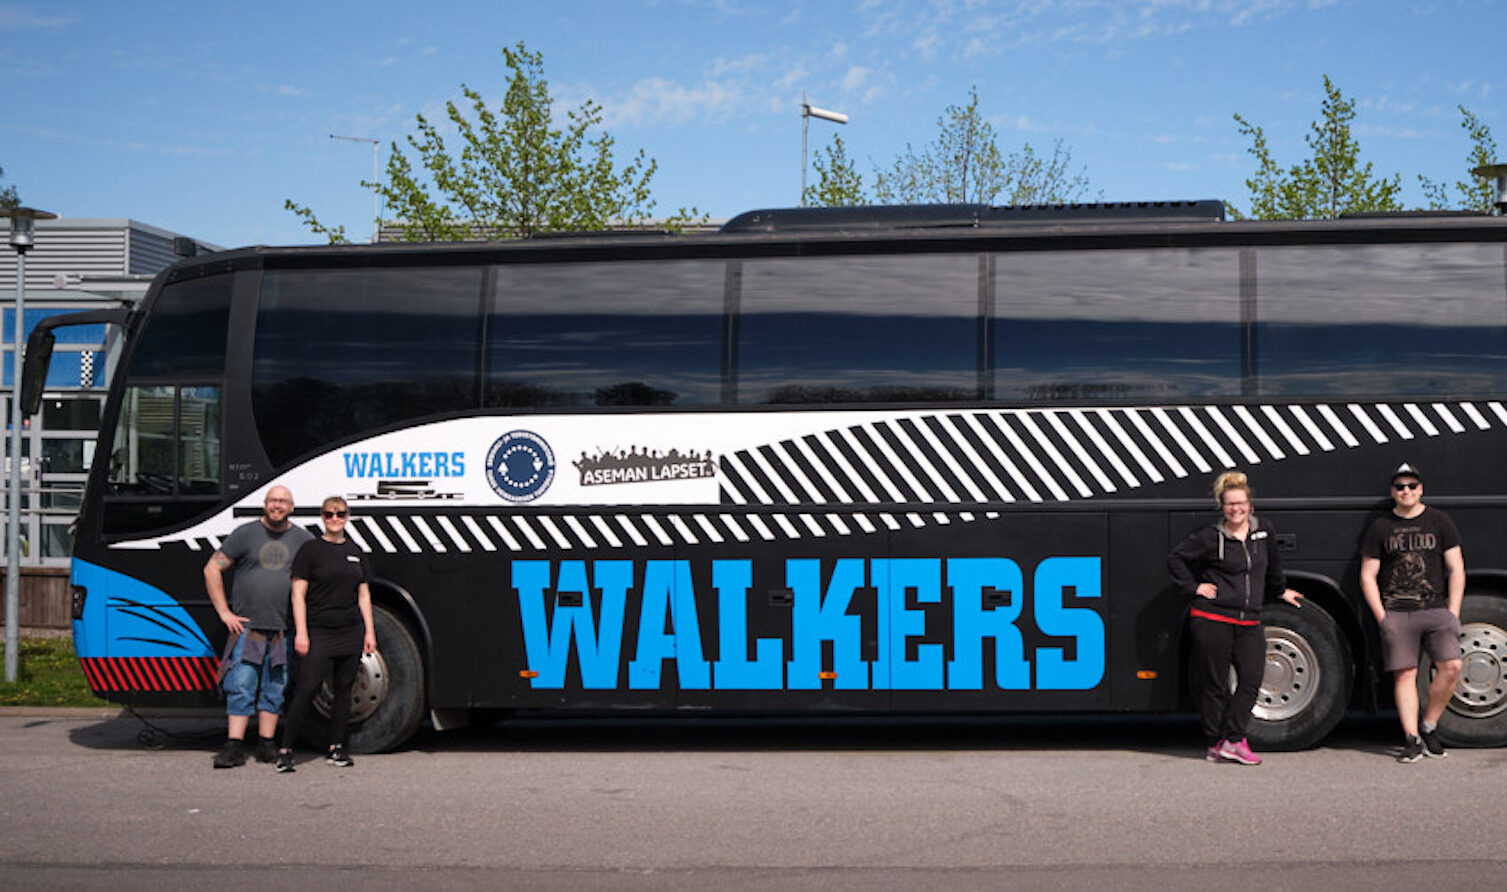 Walkers-bussi sivustapäin. Bussin edessä työntekijöitä seisomassa.